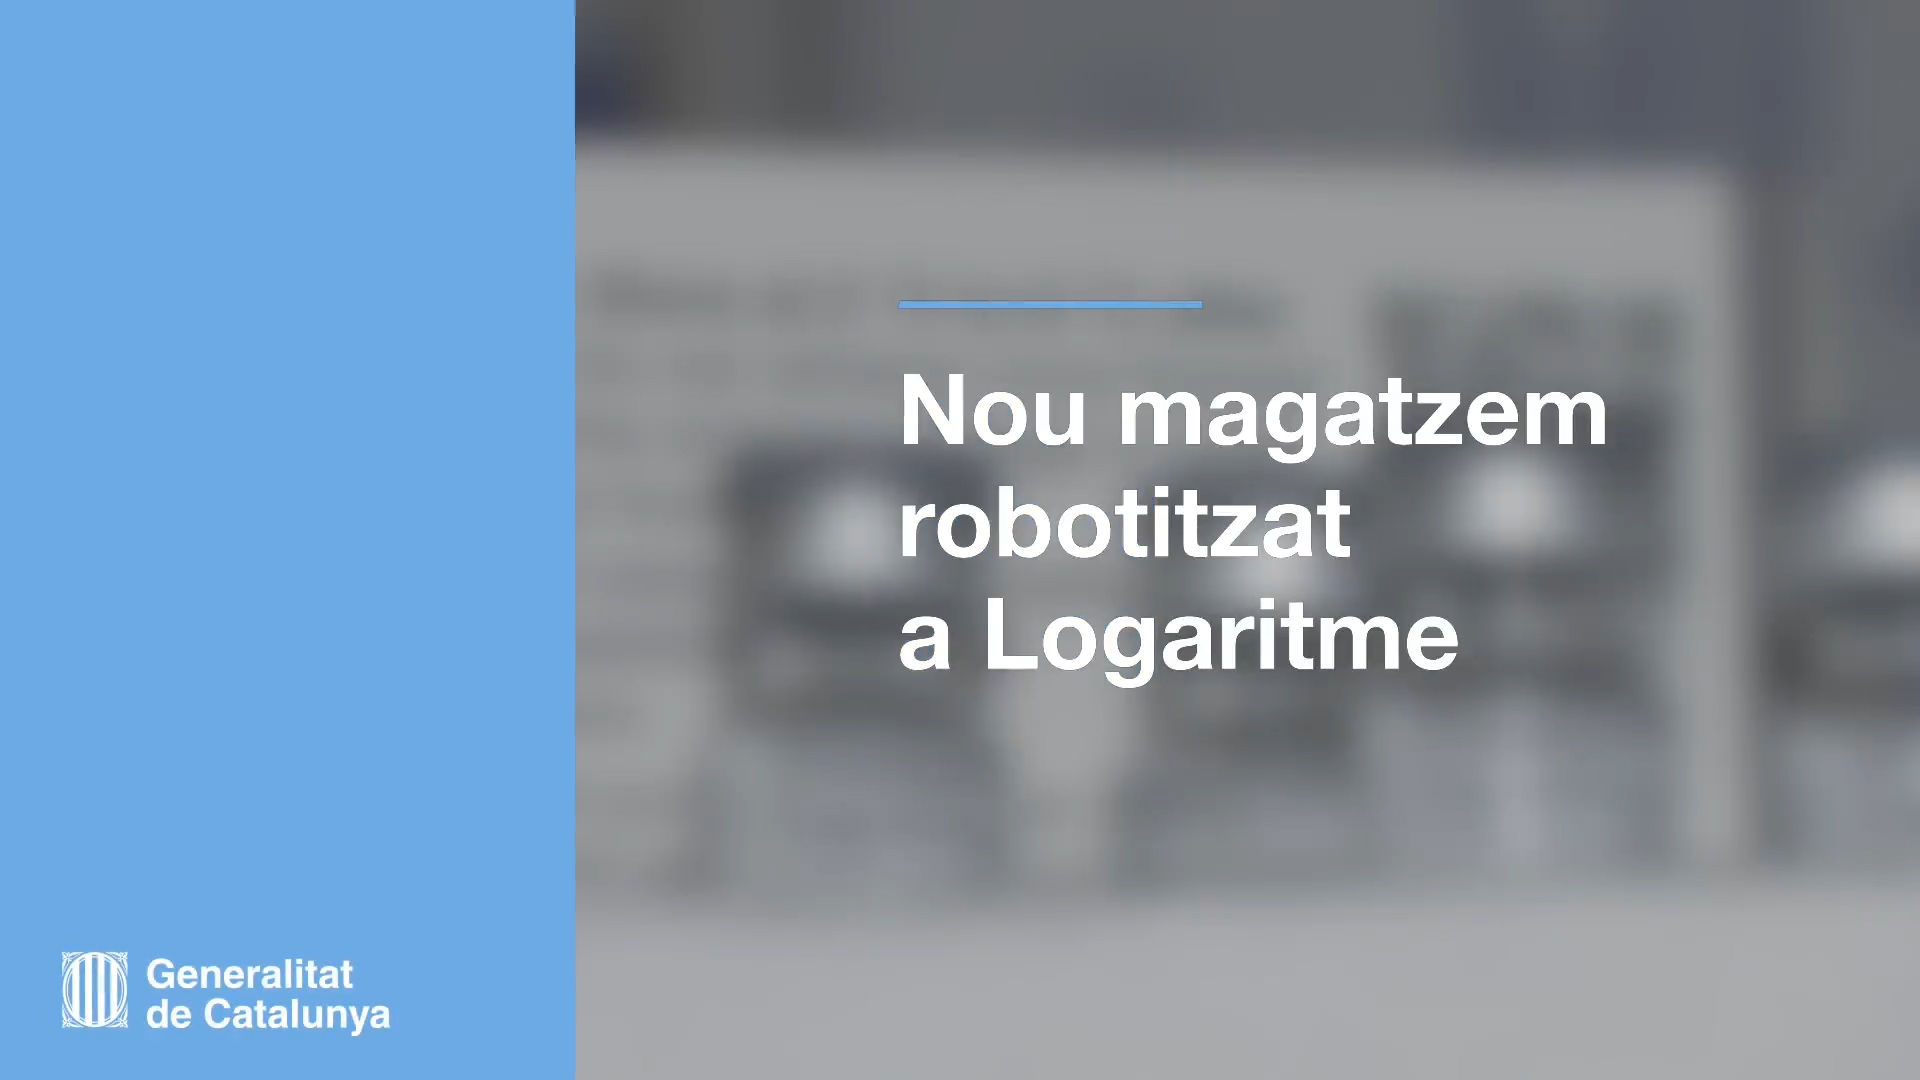 Nuevo almacén robotizado a Logaritme